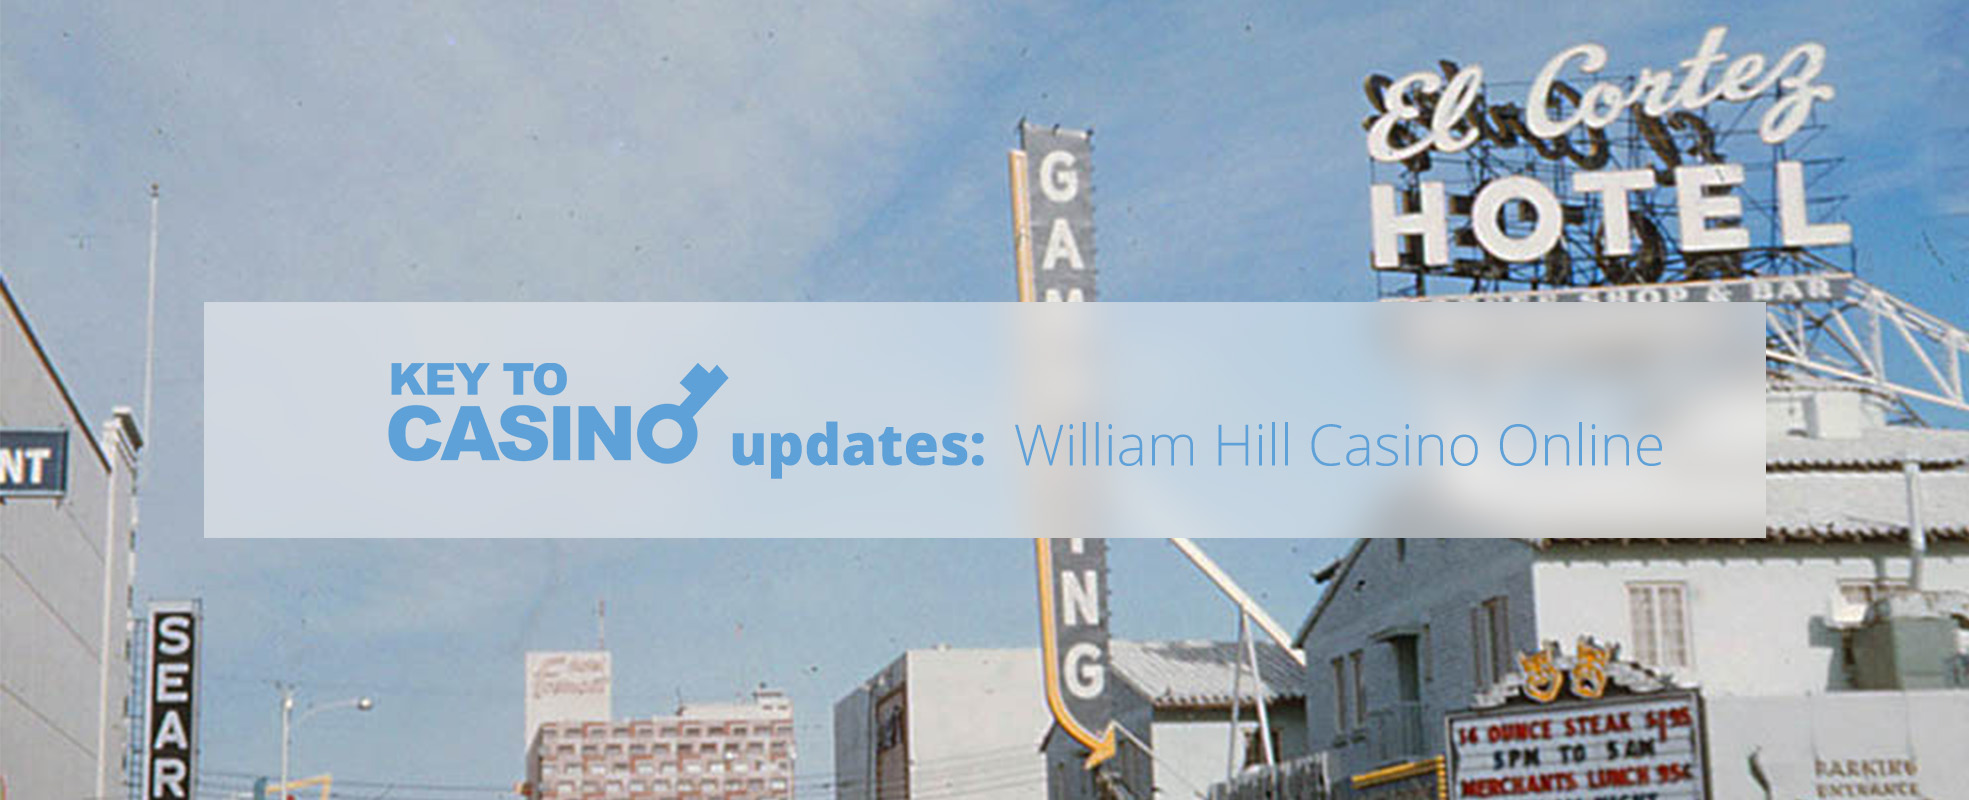 KeyToCasino Updates: William Hill Casino Online